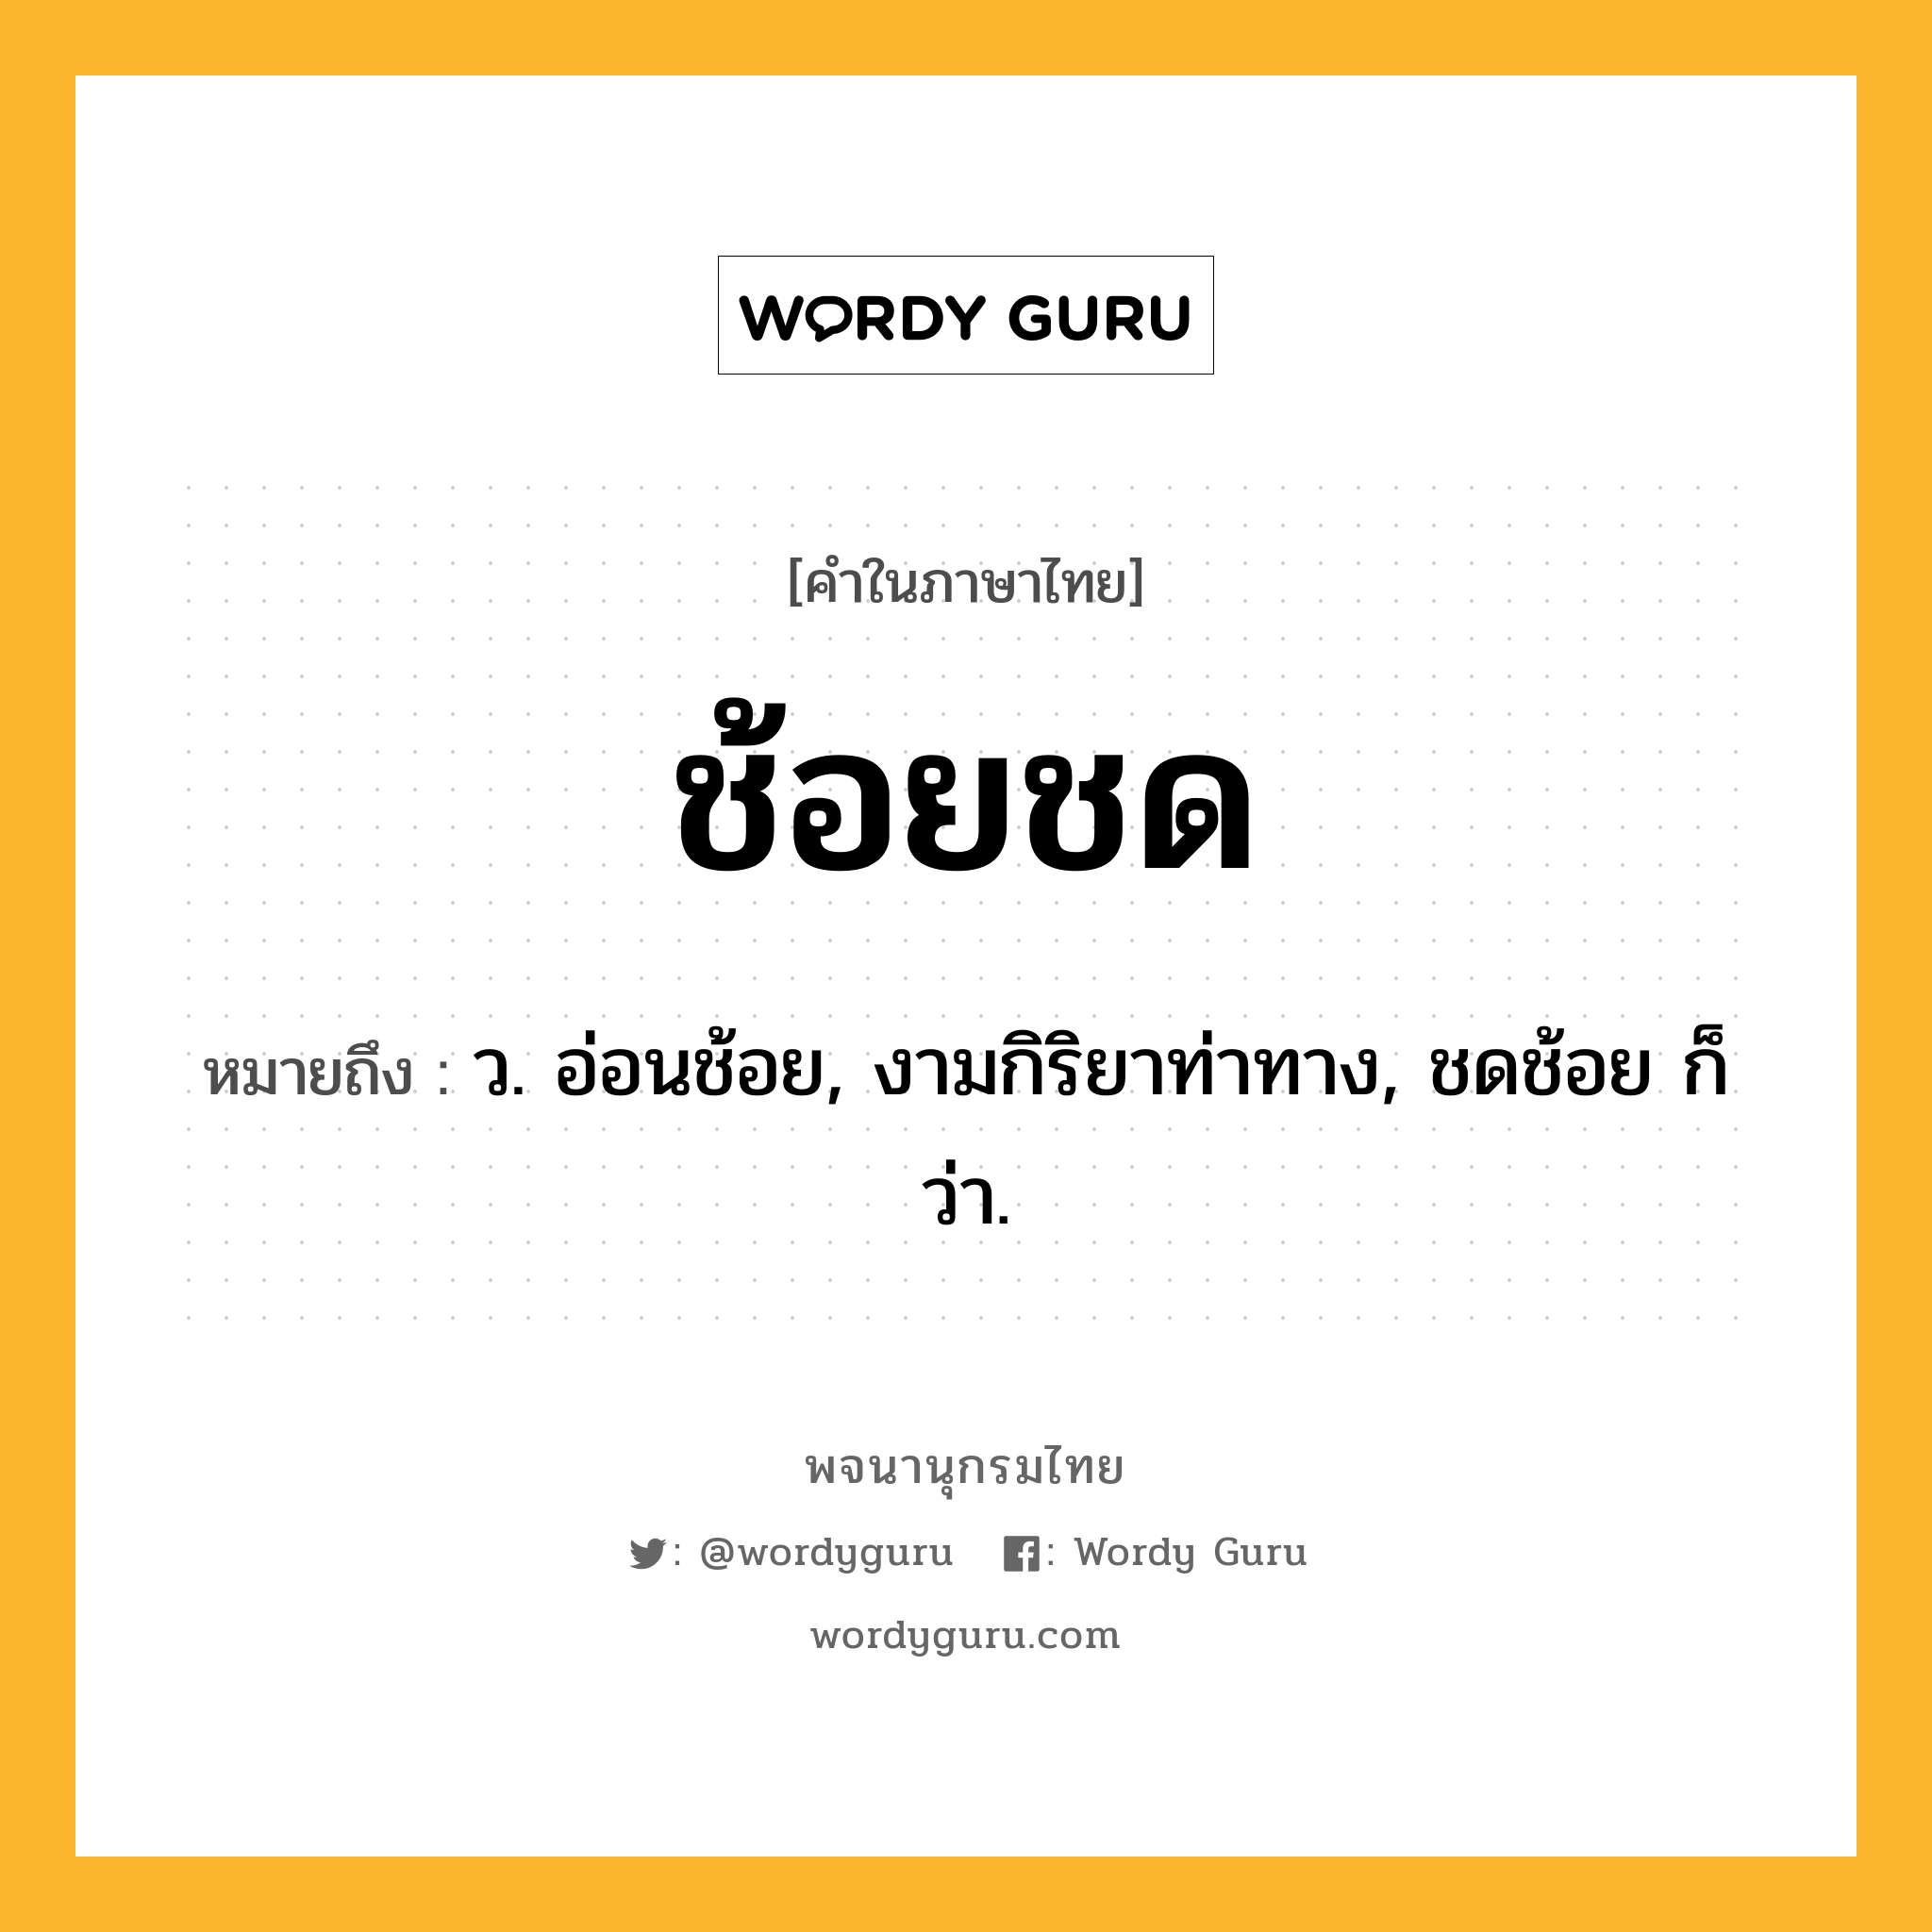 ช้อยชด ความหมาย หมายถึงอะไร?, คำในภาษาไทย ช้อยชด หมายถึง ว. อ่อนช้อย, งามกิริยาท่าทาง, ชดช้อย ก็ว่า.